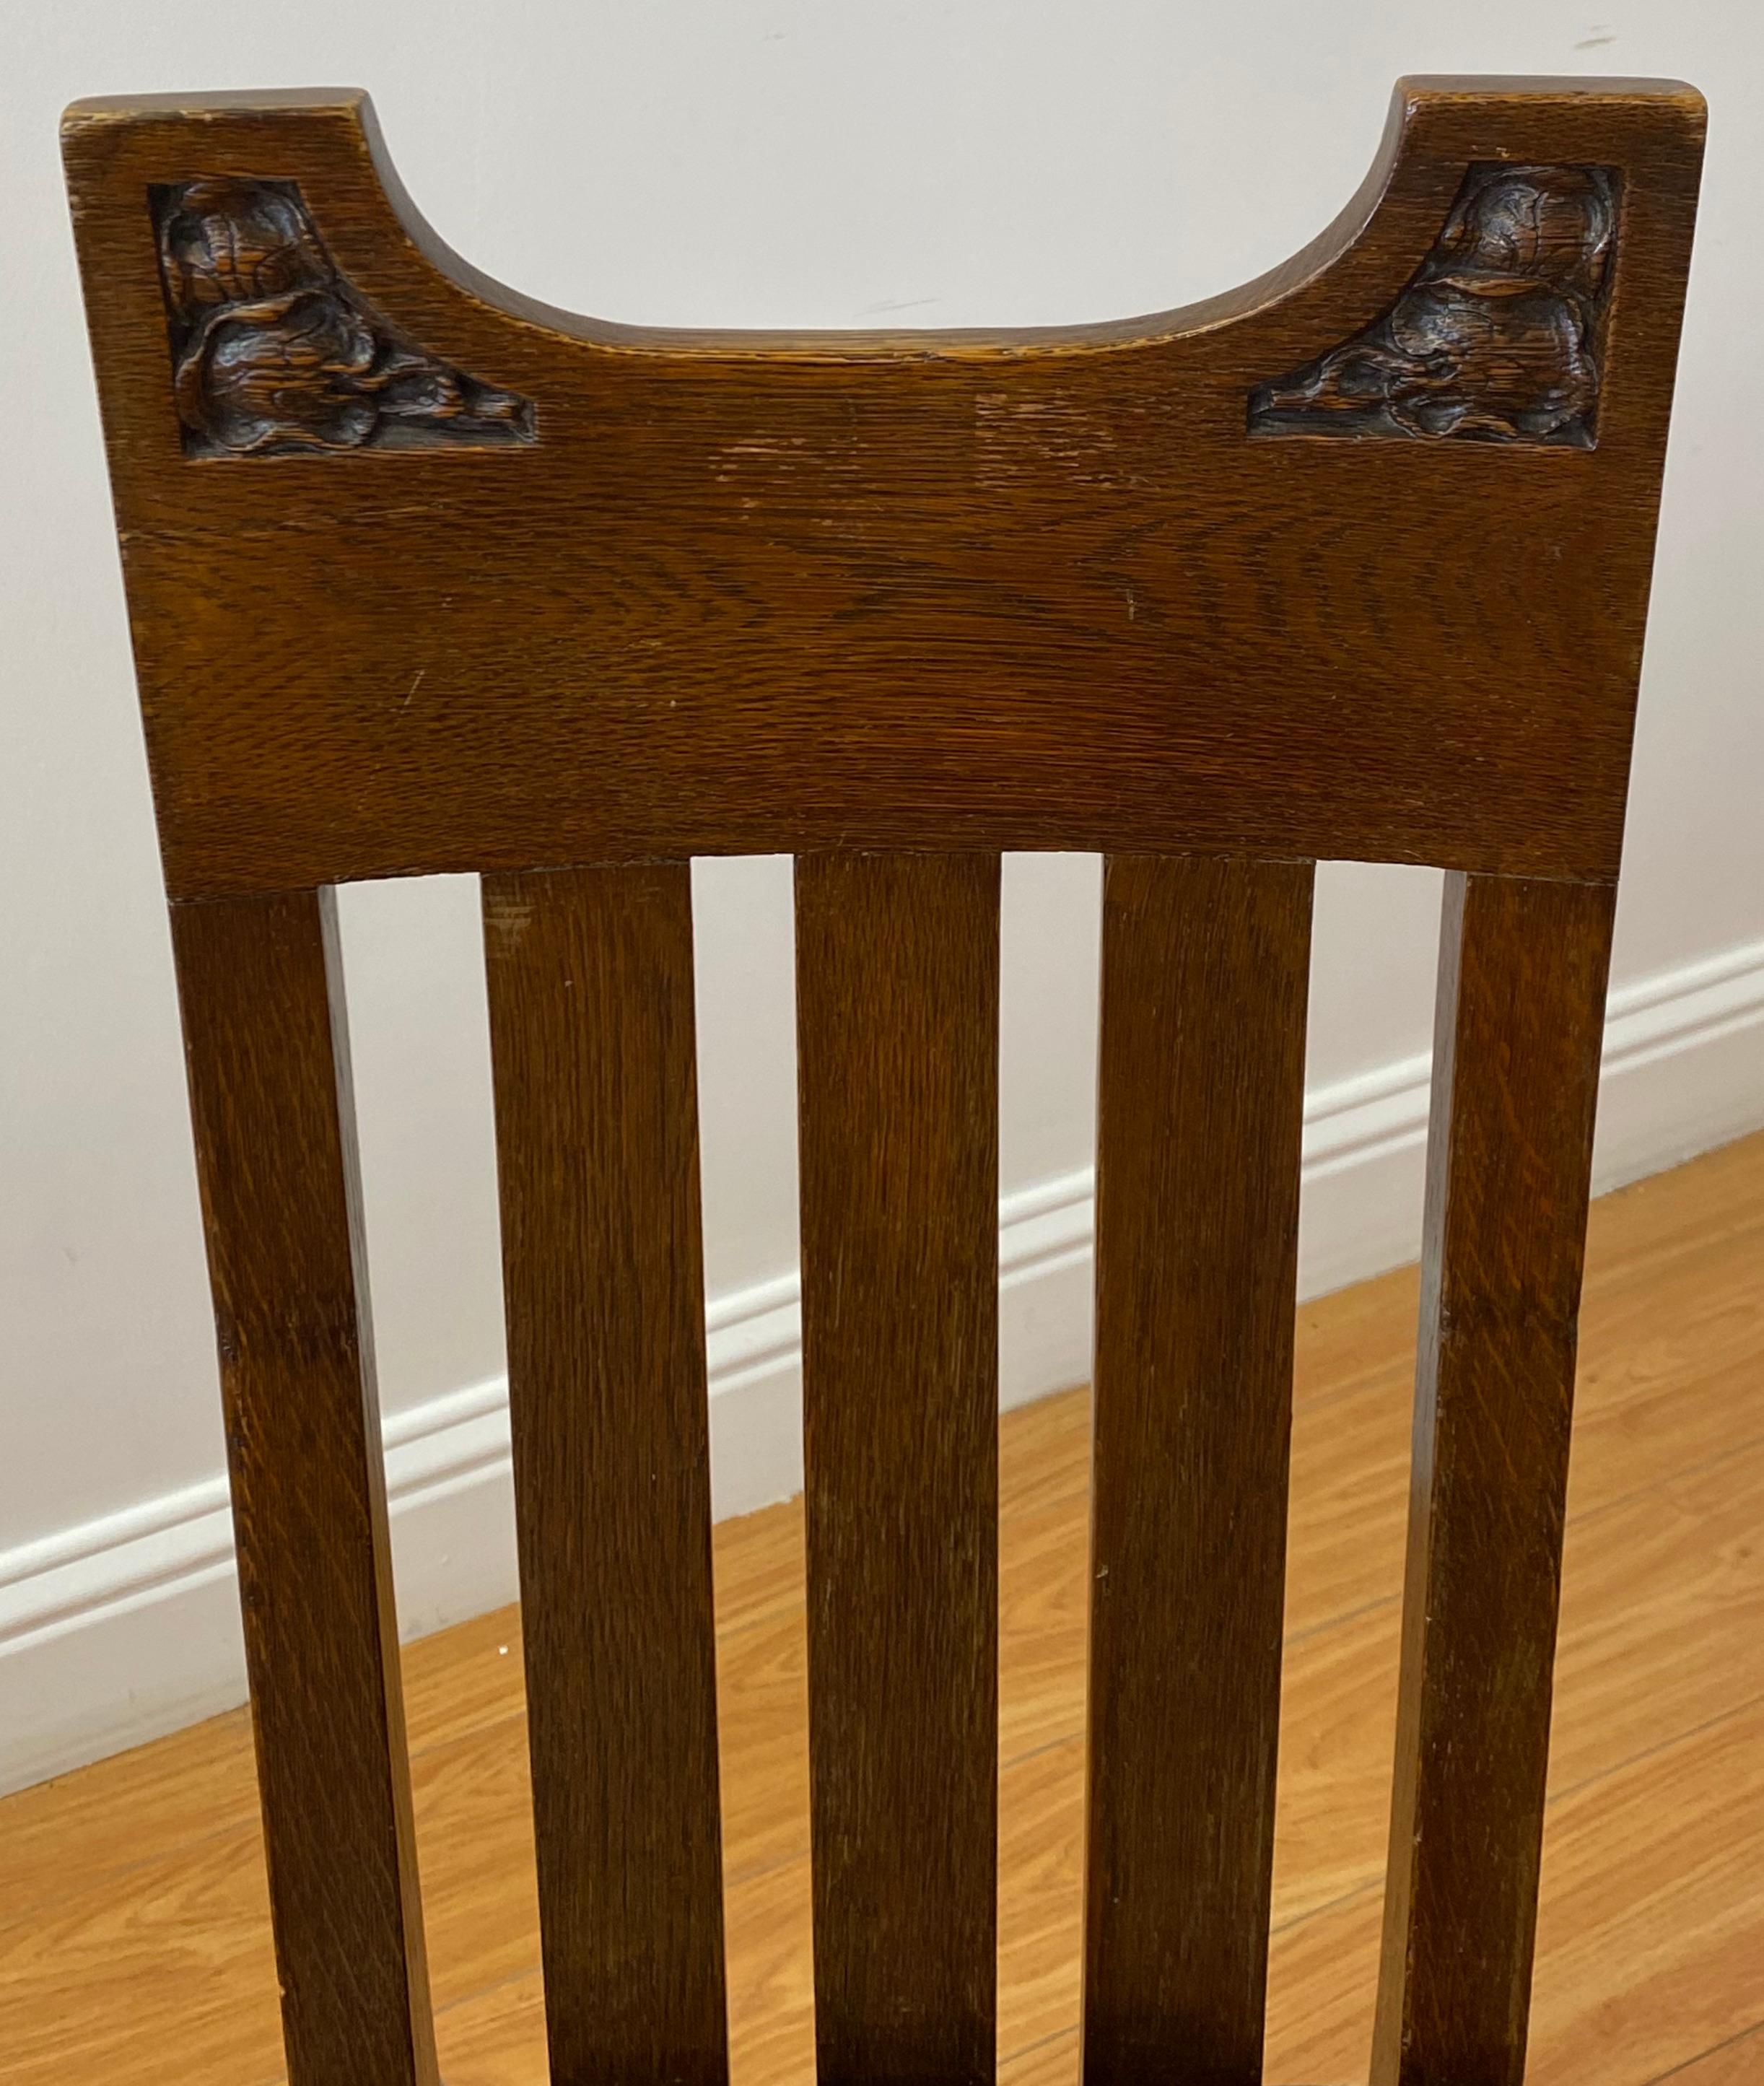 Chaise latérale Arts & Crafts en chêne américain, C.1920

Sculpté à la main - Fait sur mesure - Revêtement en cuir

Mesures : 19